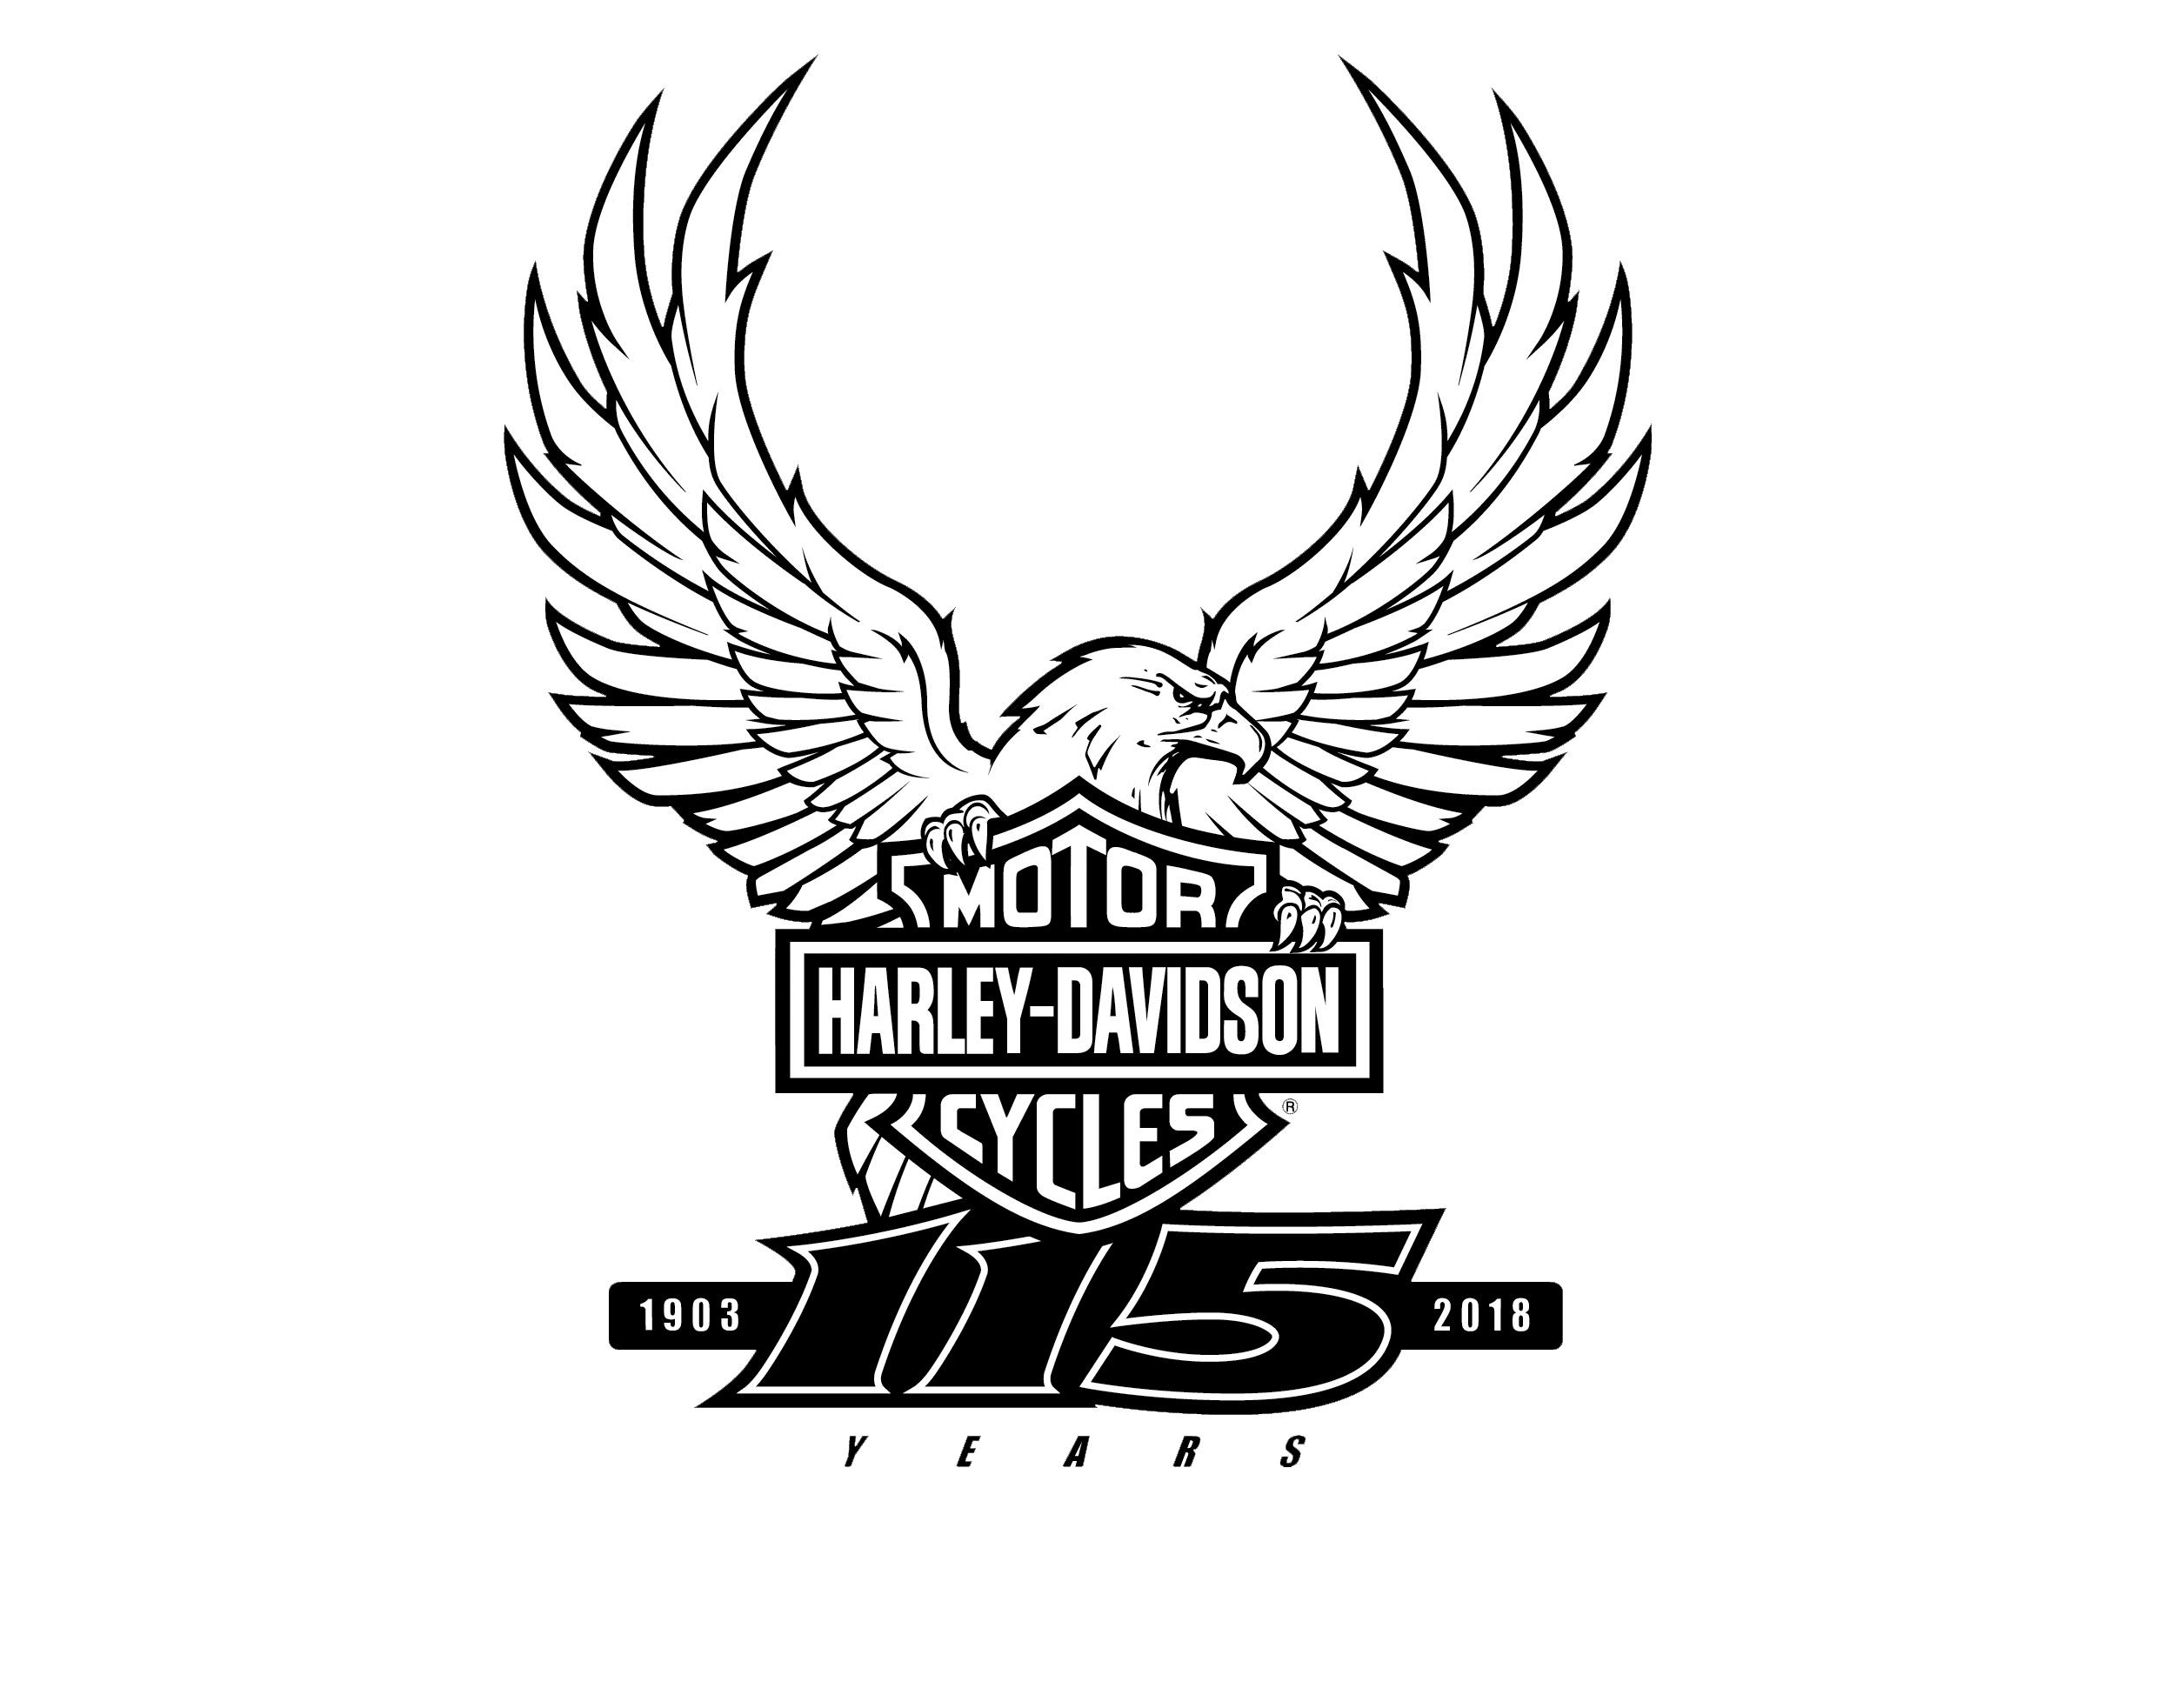 Logotip commemoratiu dels 115 anys d’història amb l’icònic emblema de H-D acompanyat de l’àguila